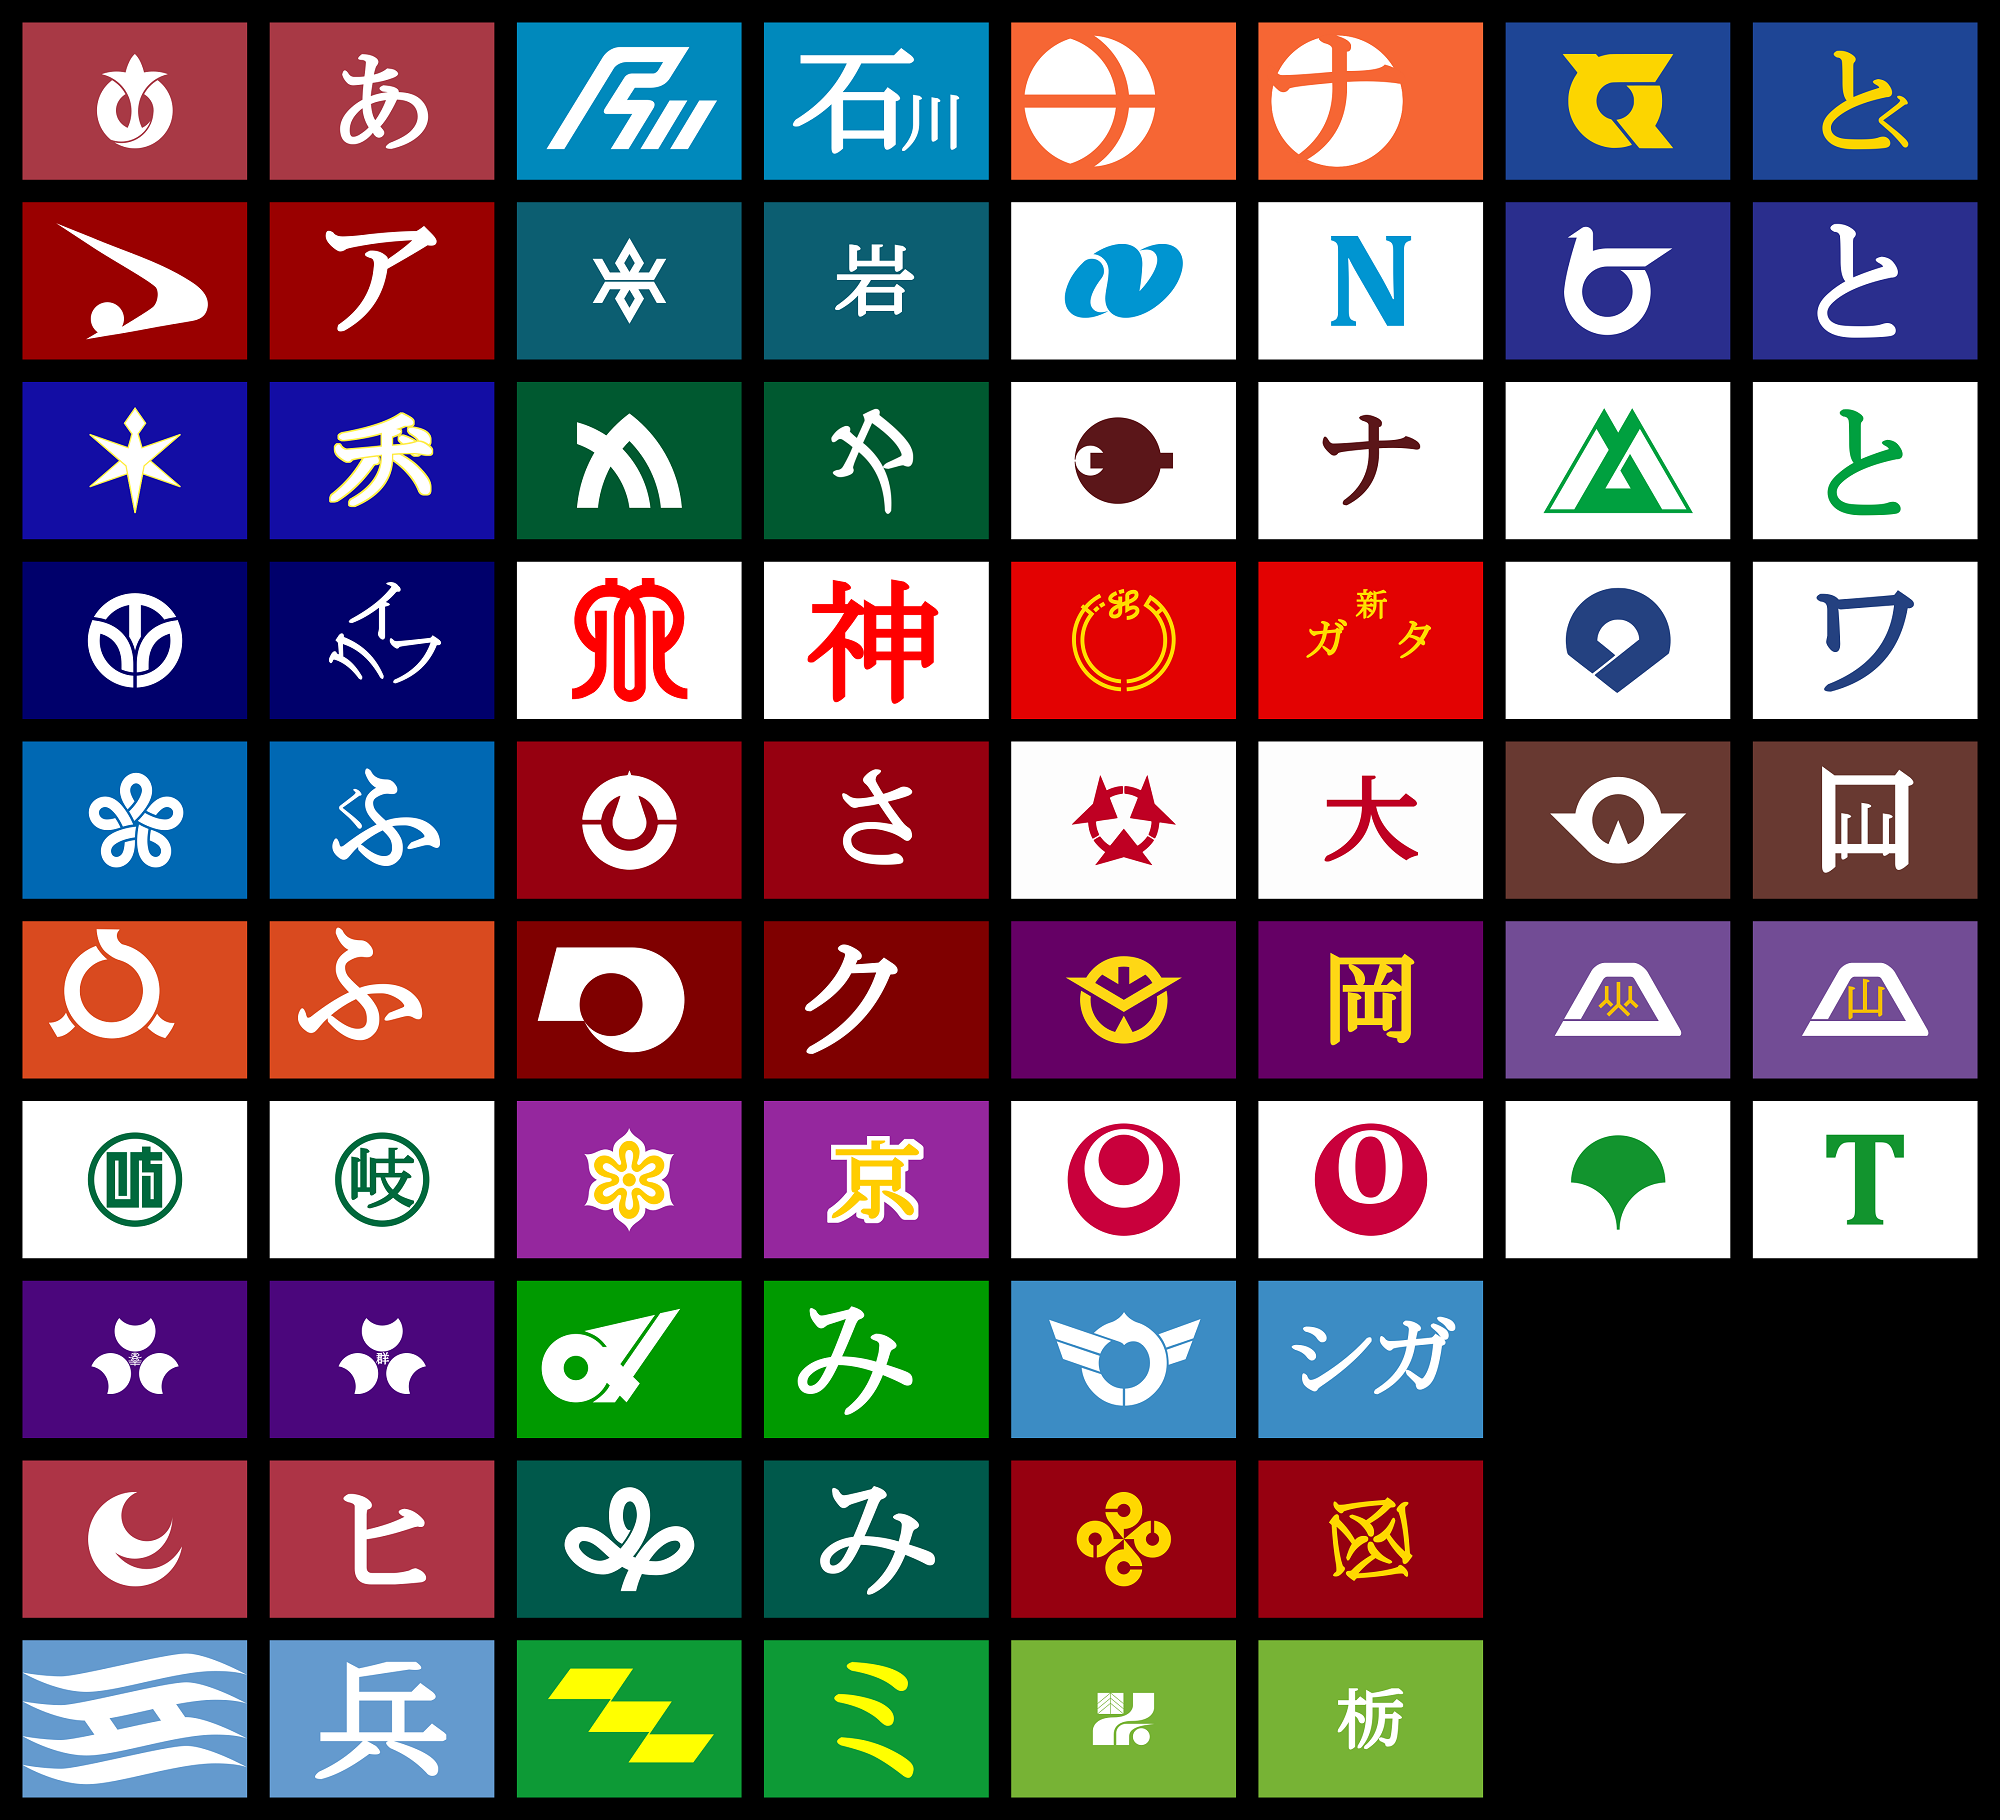 海外「日本の都道府県の旗に描かれている模様が文字だとは知らなかった」 | 海外の反応 まとめアンテナリーダー